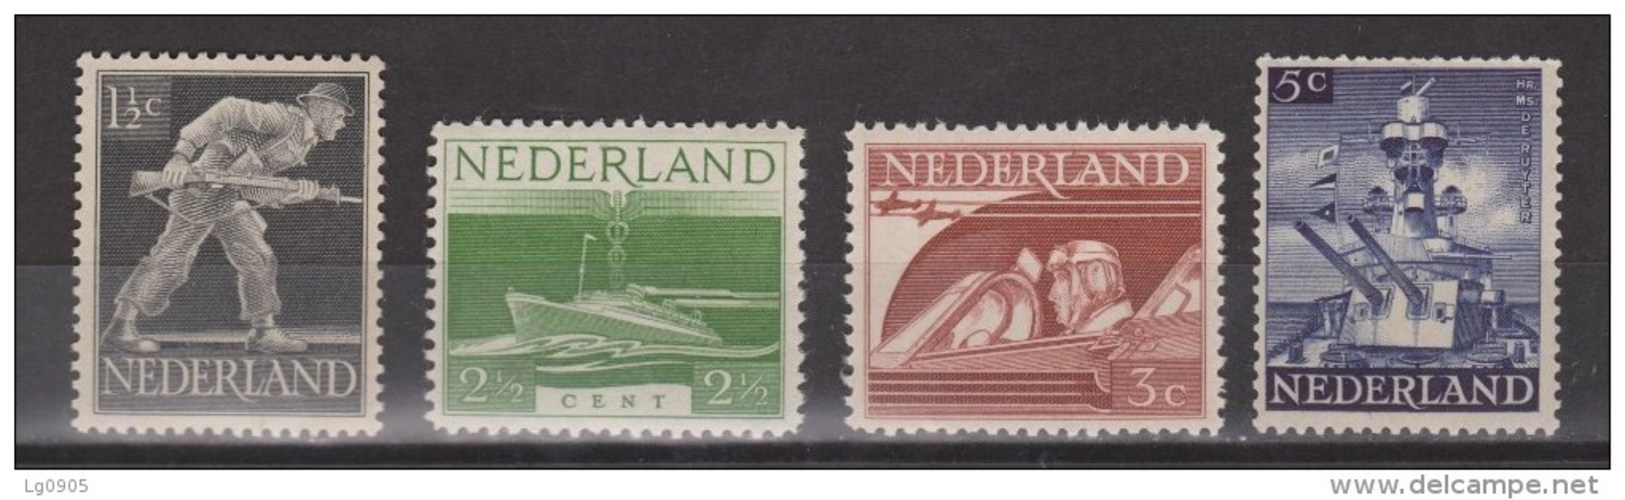 NVPH Nederland Netehrlands Pays Bas Niederlande, Holanda 428 429 430 431 MNH Bevrijdingszegels 1944 ALSO PER PIECE - Unused Stamps